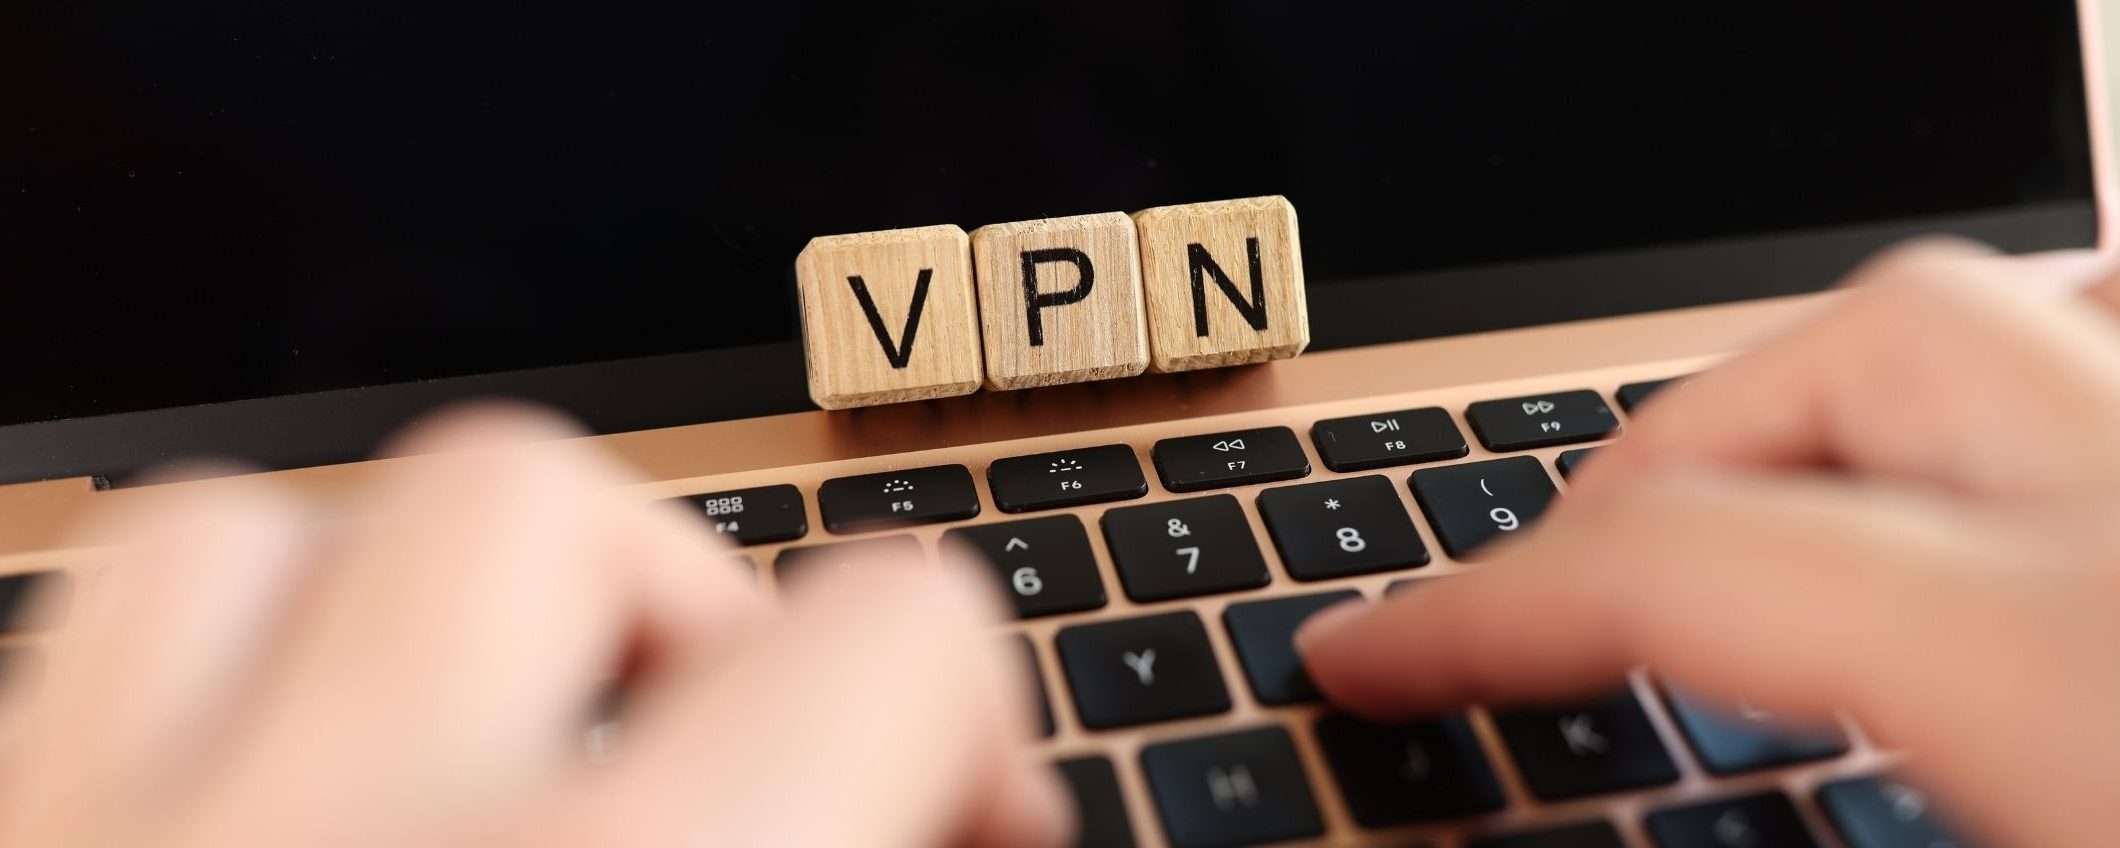 Atlas VPN: la VPN che ti protegge online e ti fa risparmiare